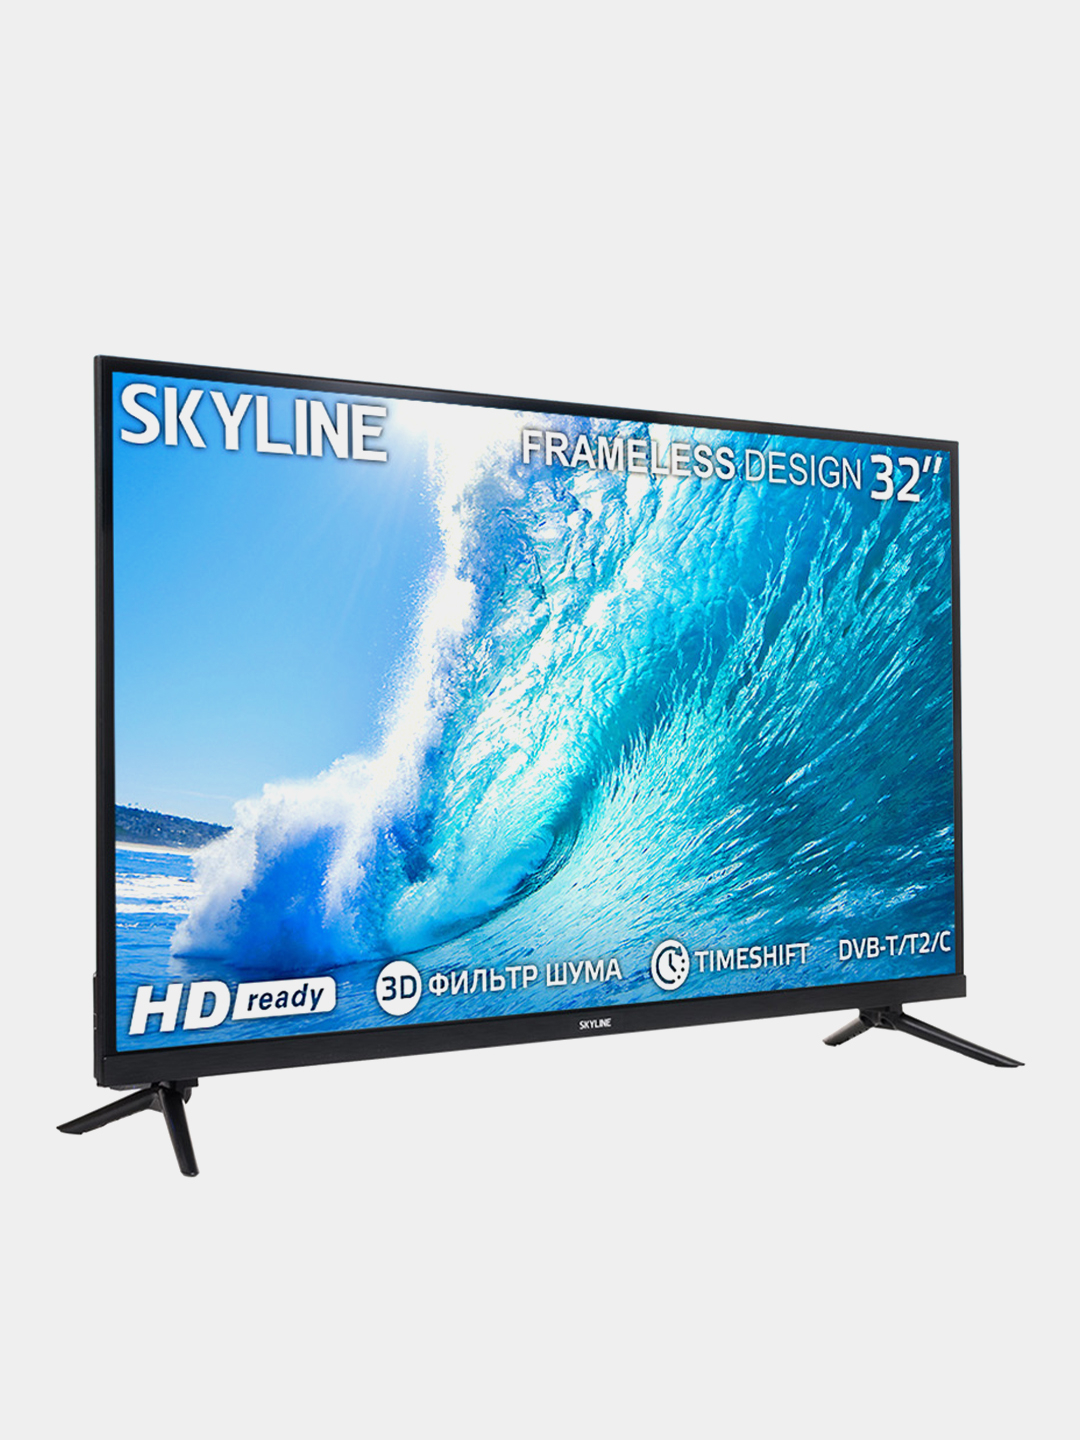 Телевизоры skyline отзывы. Телевизор Скайлайн 32 дюйма. Телевизор Skyline. Телевизор Скайлайн 32 дюйма цена.